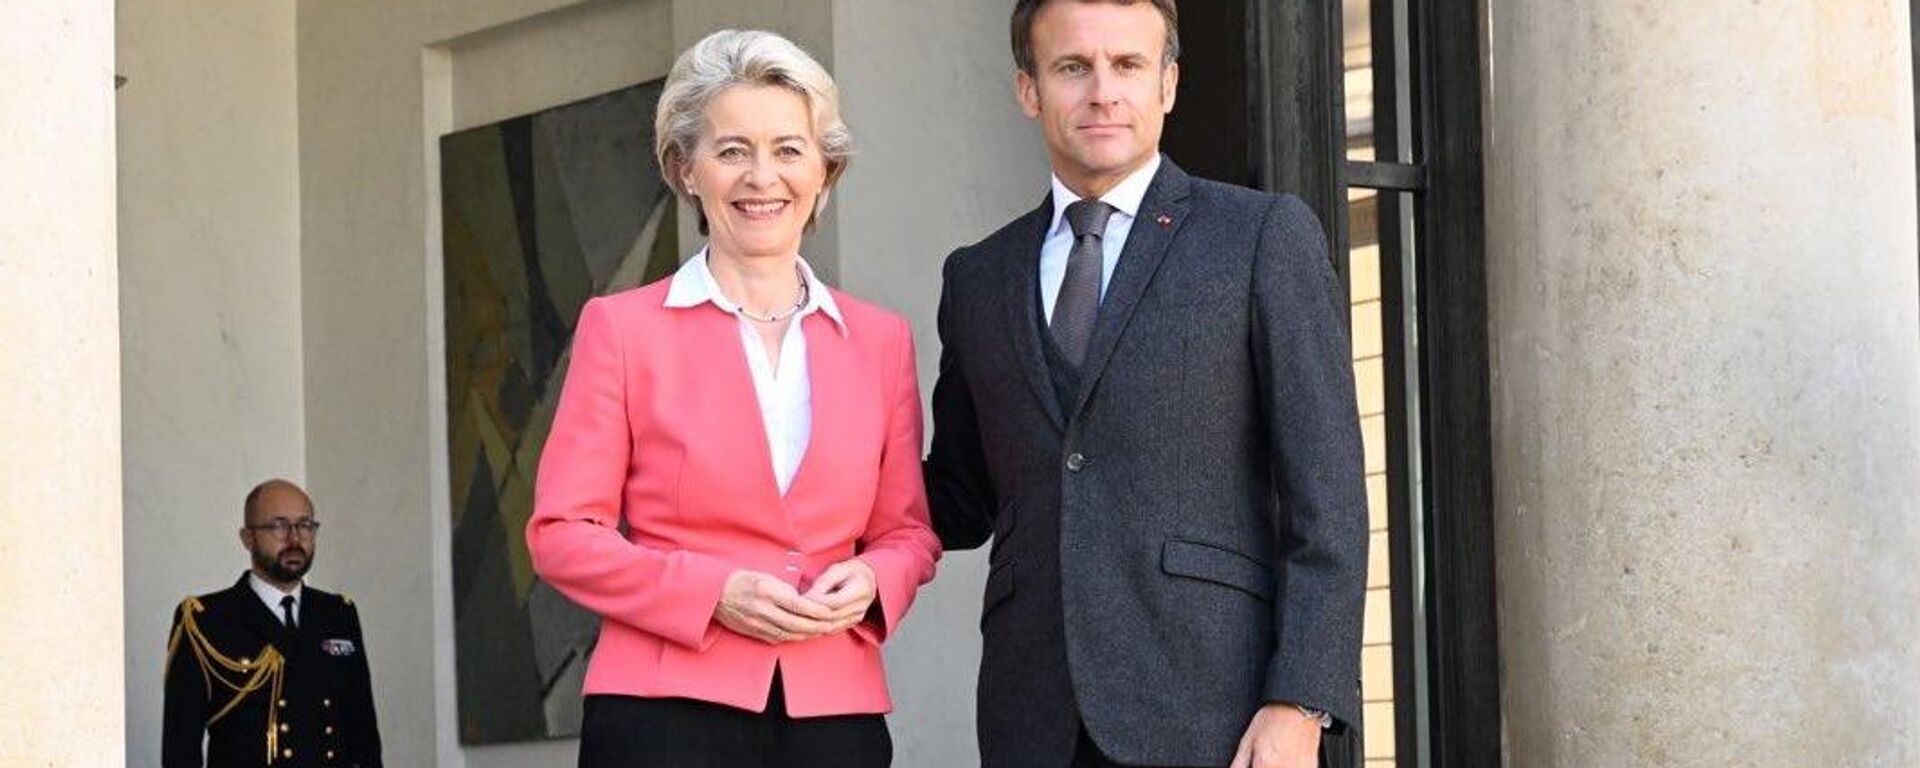 La titular de la Comisión Europea, Ursula von der Leyen, junto al presidente de Francia, Emmanuel Macron. - Sputnik Mundo, 1920, 04.10.2022